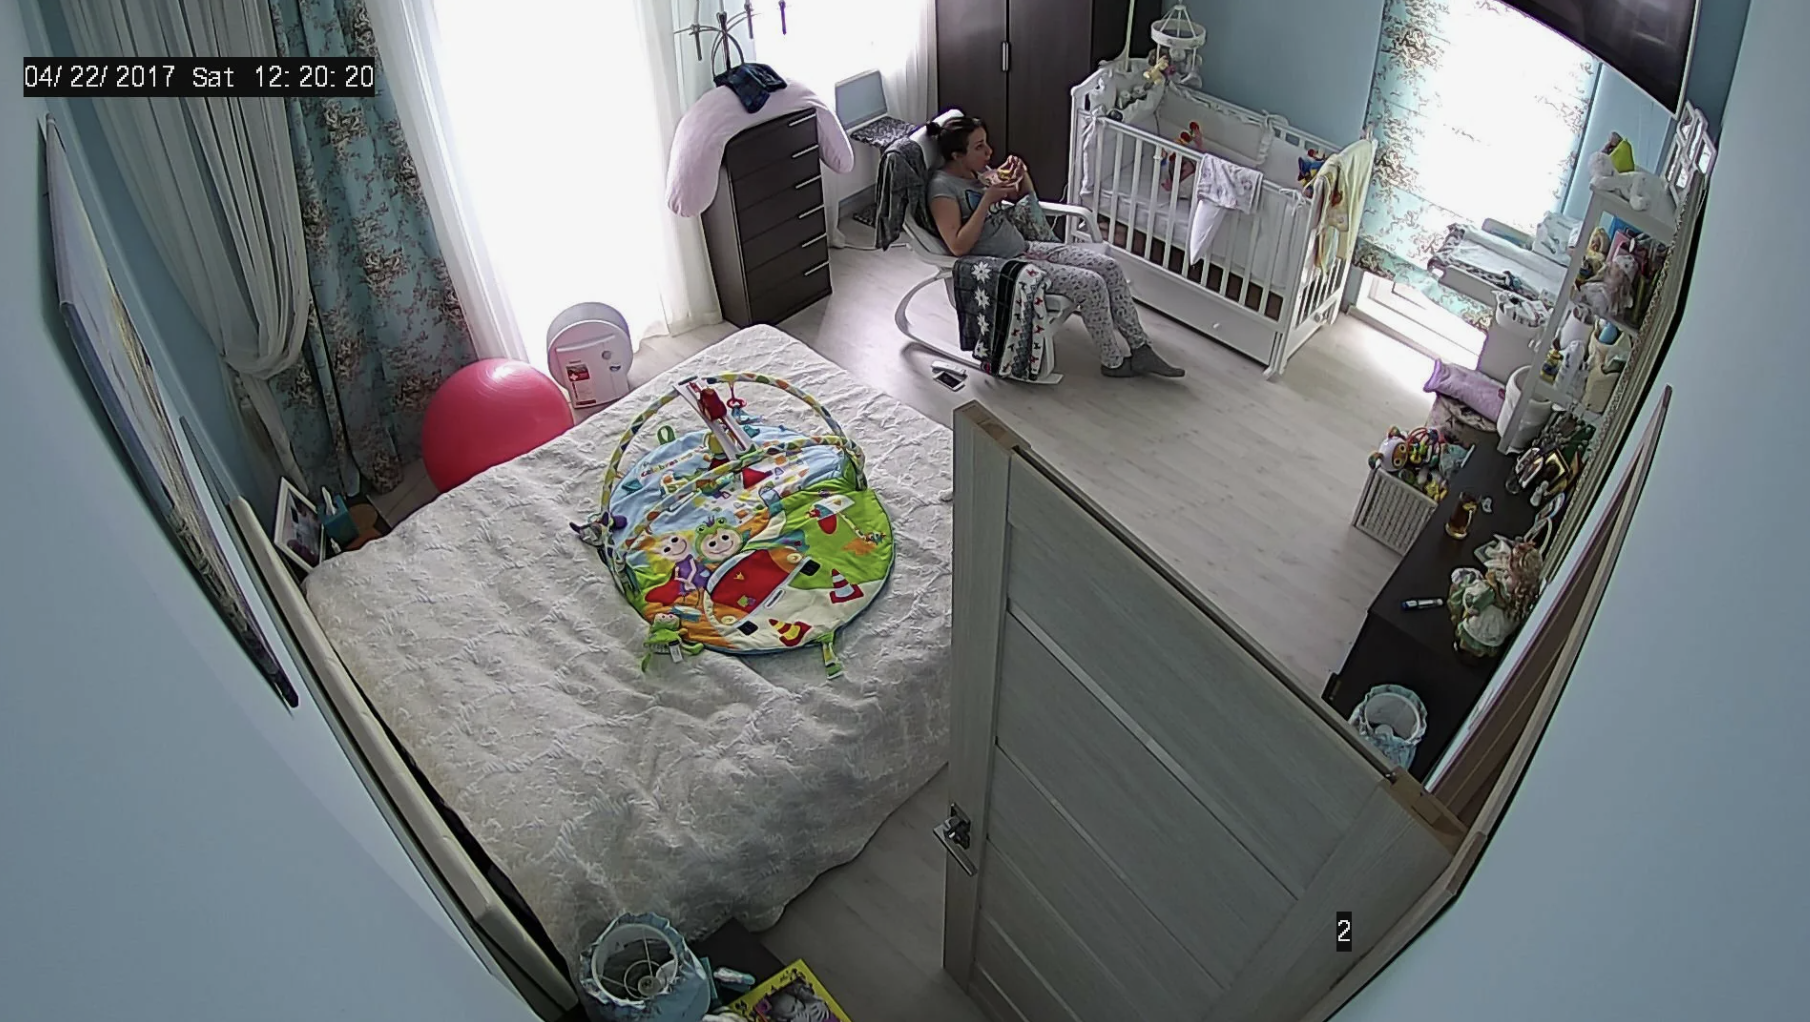 Überwachungskamera im Kinderzimmer | Quelle: Shutterstock